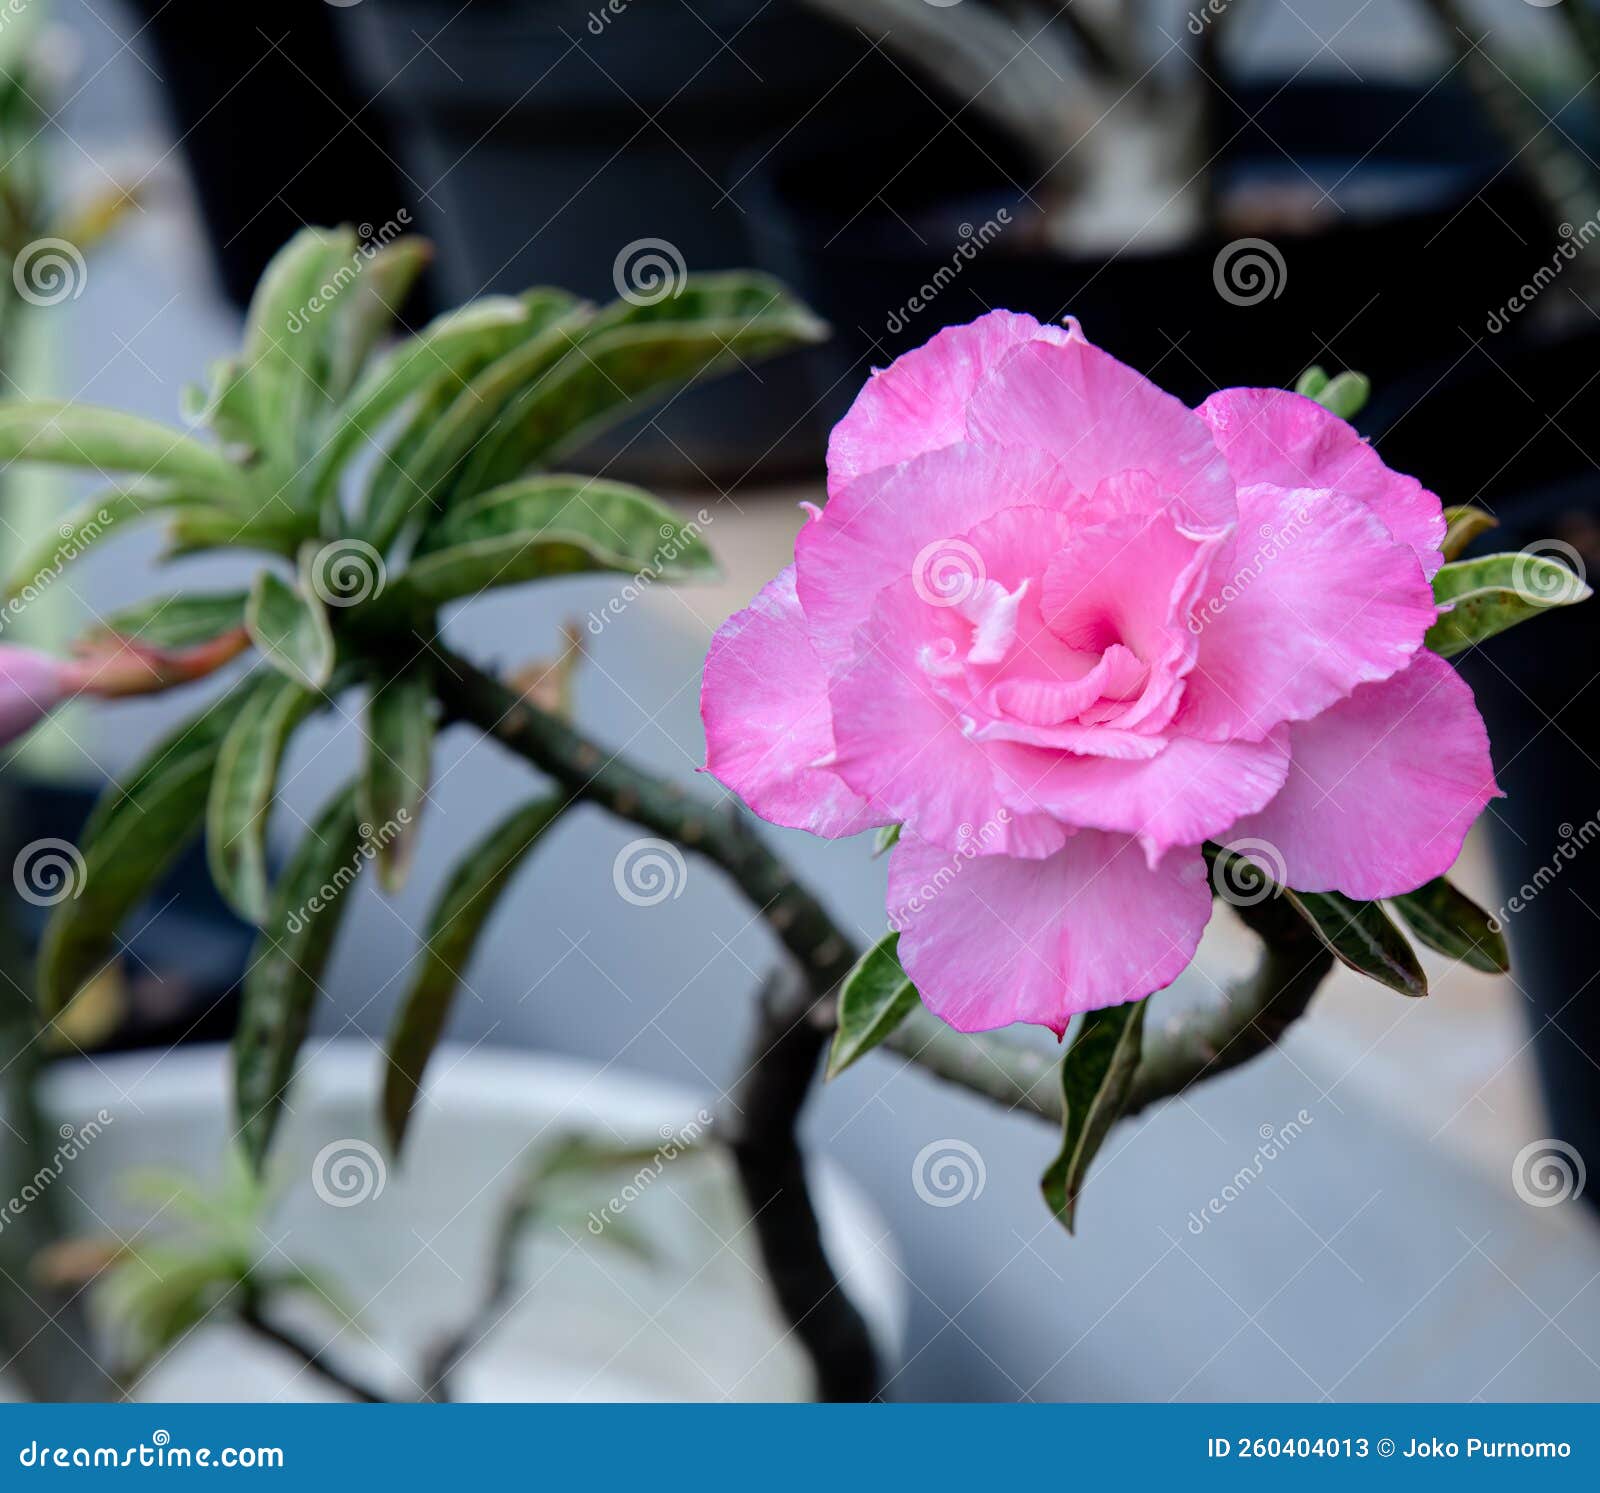 Beautiful Japanese Frangipani, Whitish Pink Adenium Flowers Stock Image ...